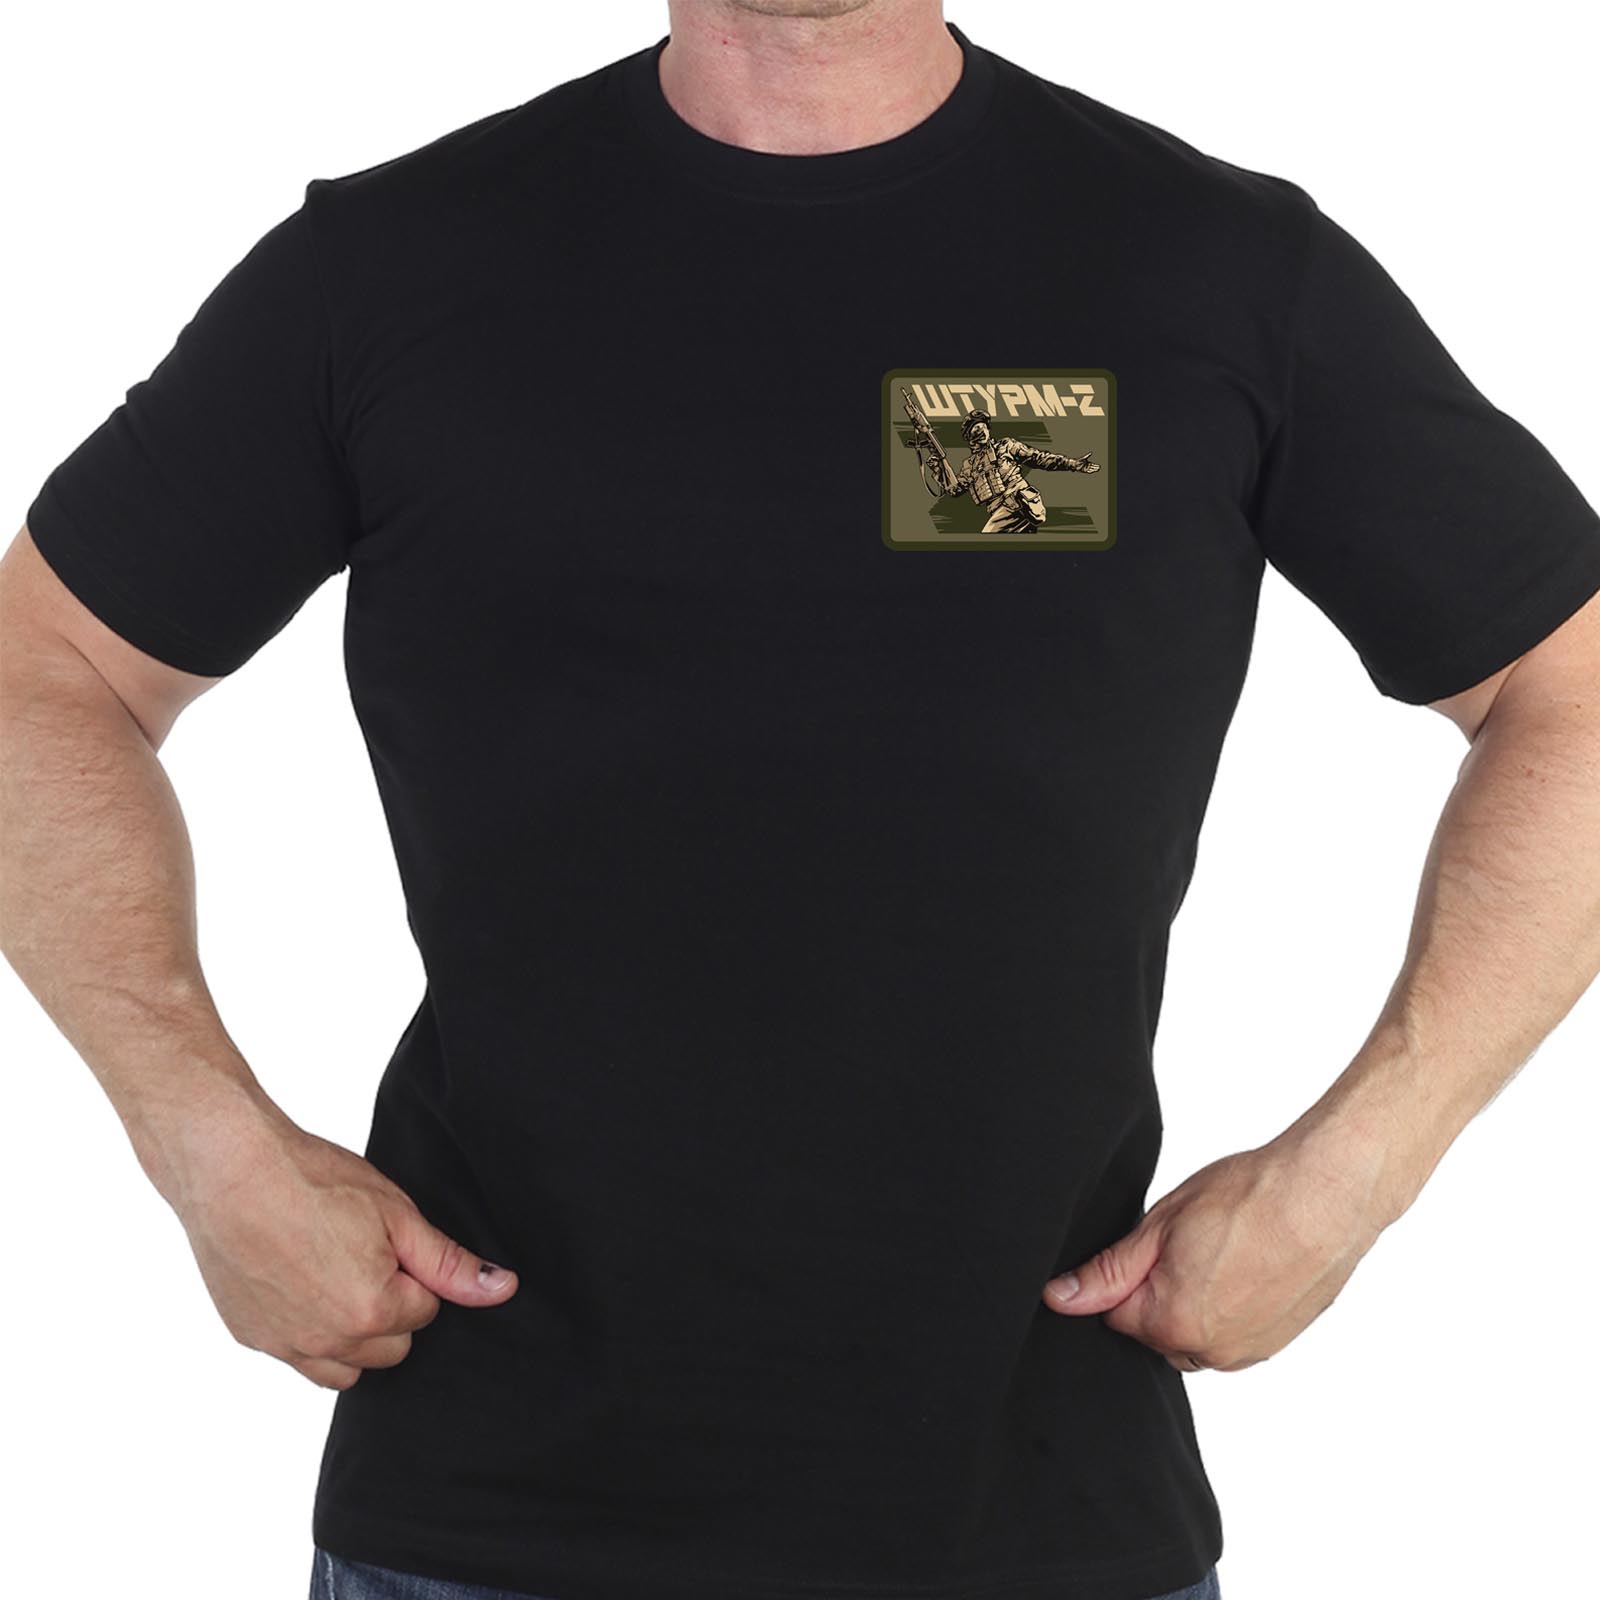 Купить черную футболку с термонаклейкой "Штурм-Z"